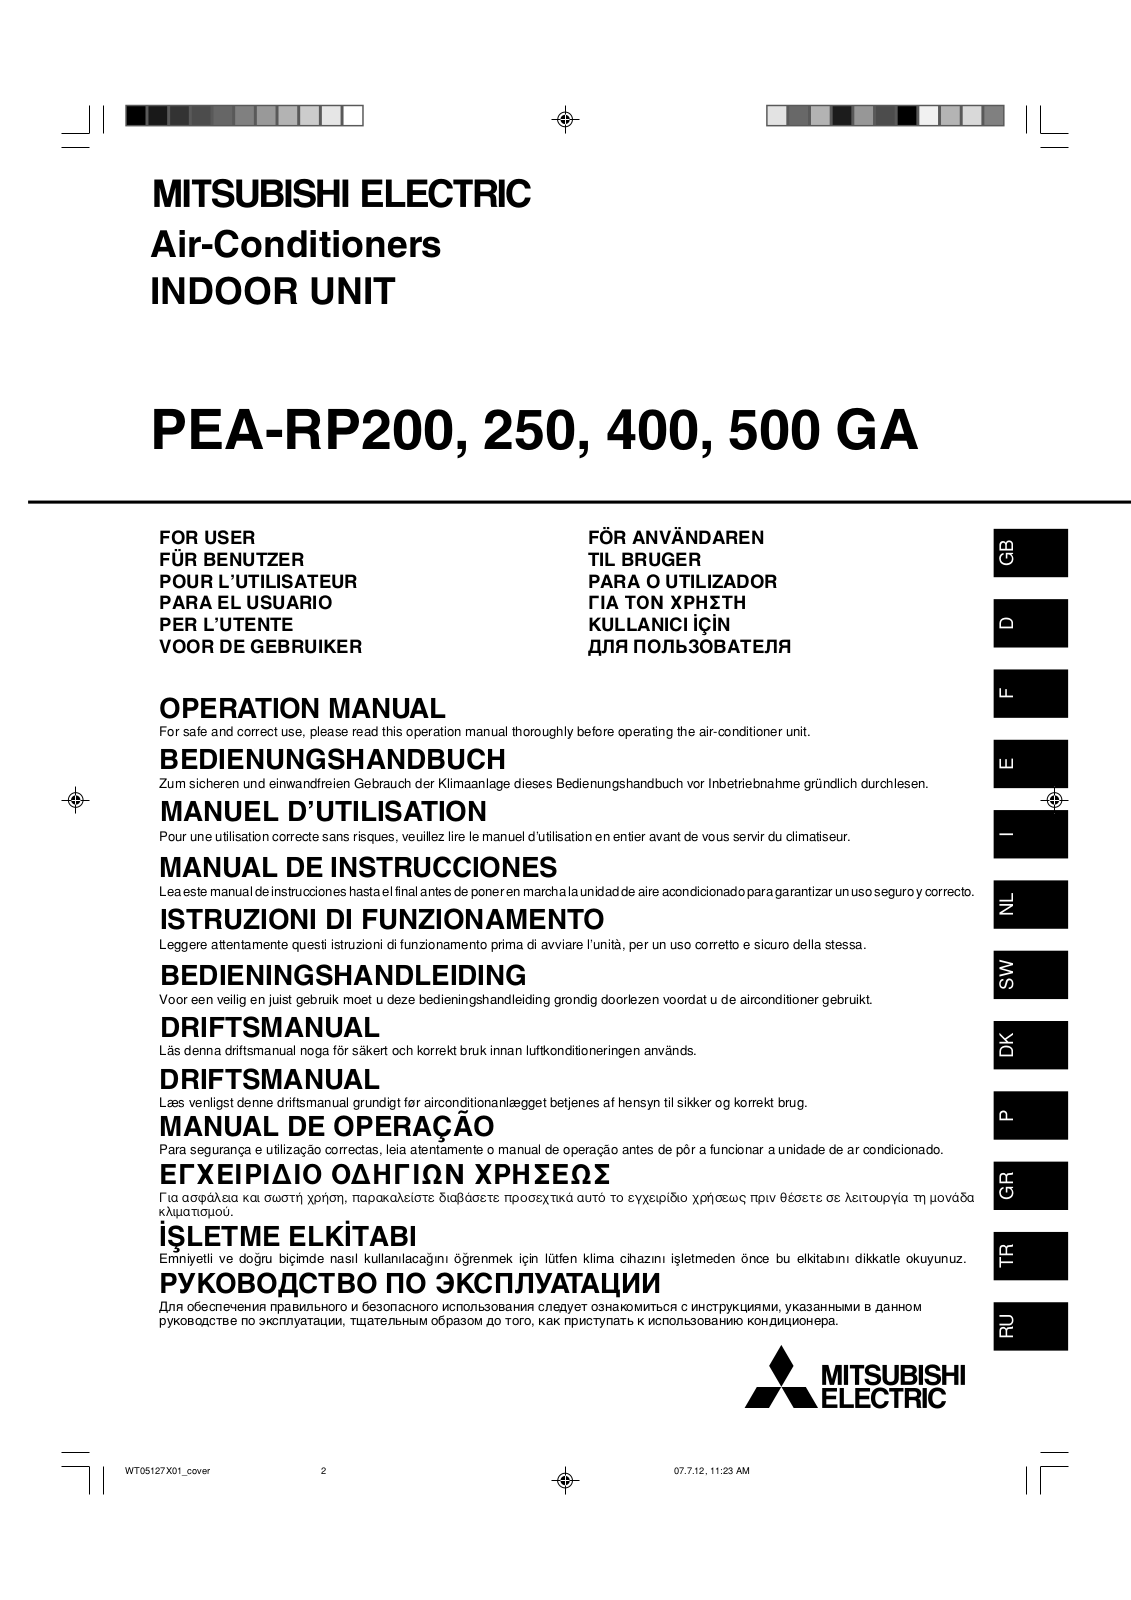 Mitsubishi PEA-RP200, PEA-RP250, PEA-RP400, PEA-RP500 GA User Manual